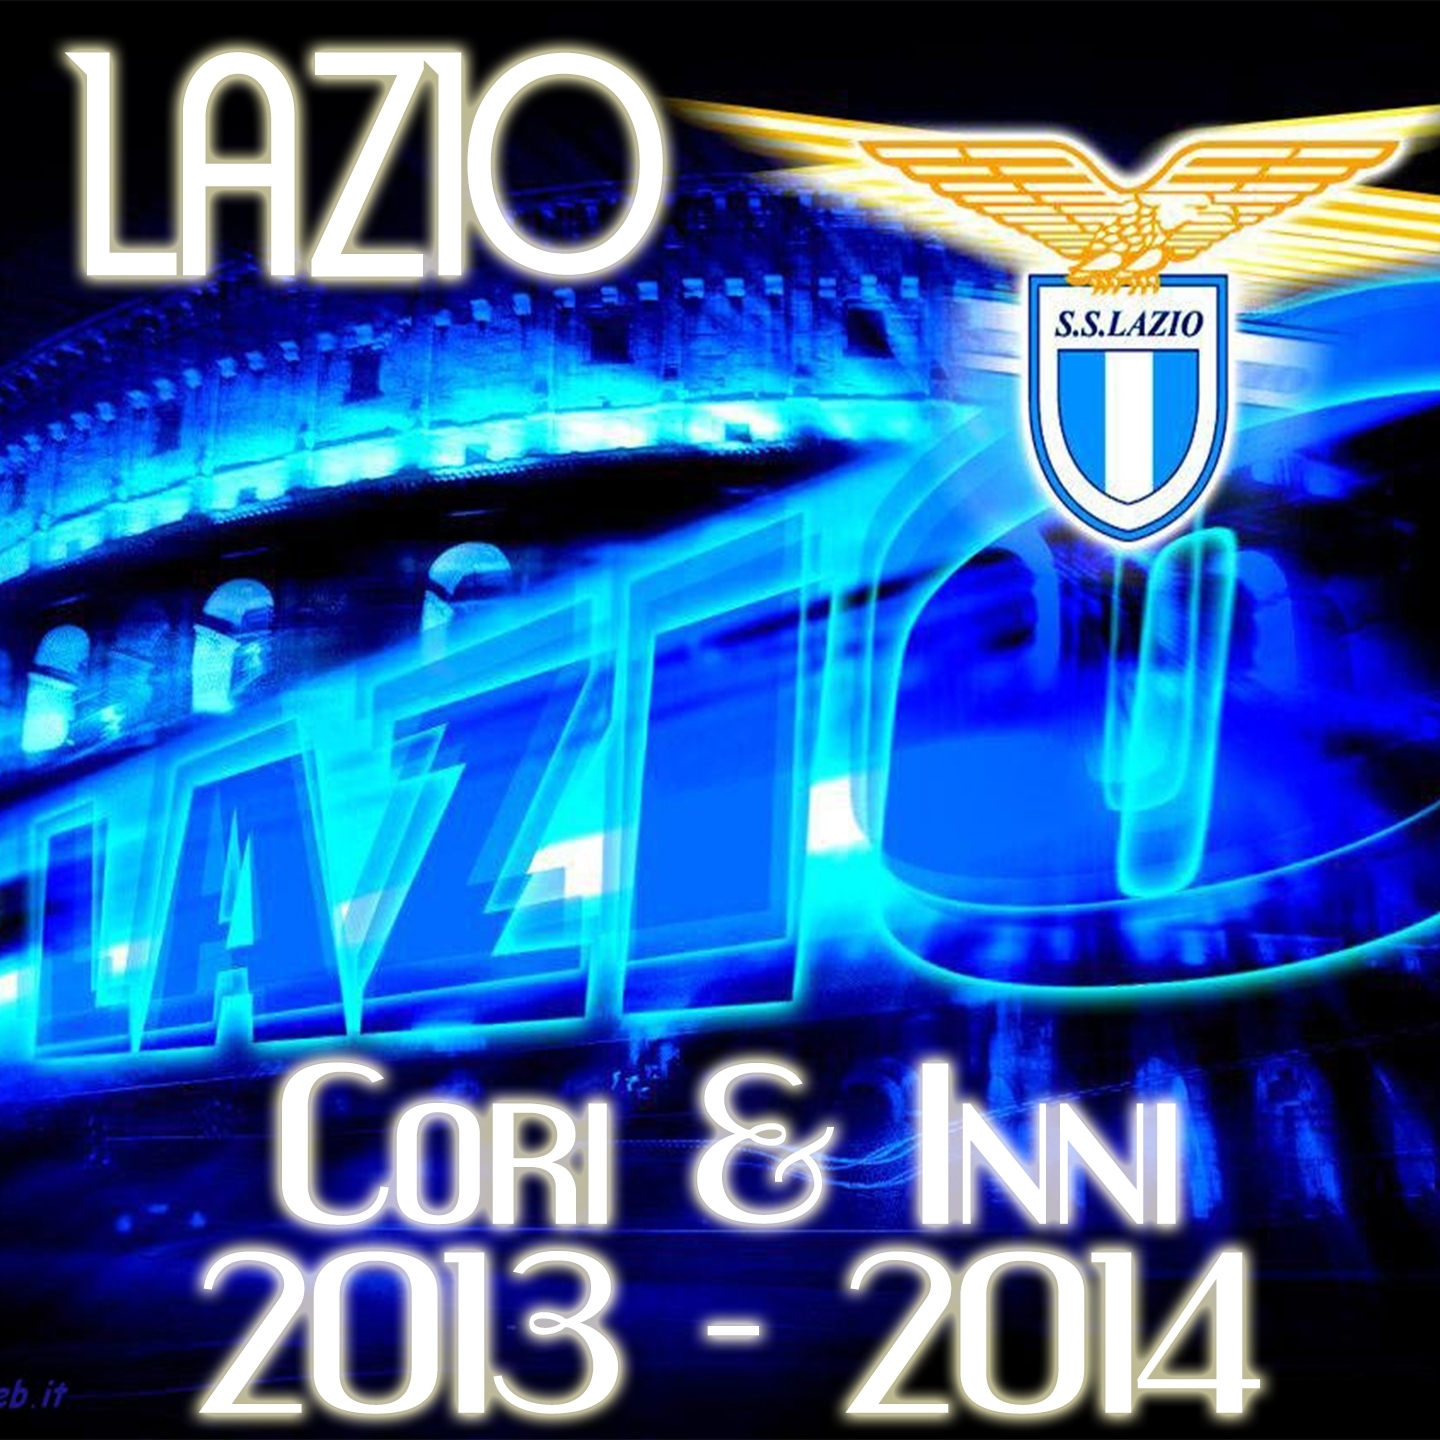 Lazio 2013-2014: Cori & Inni